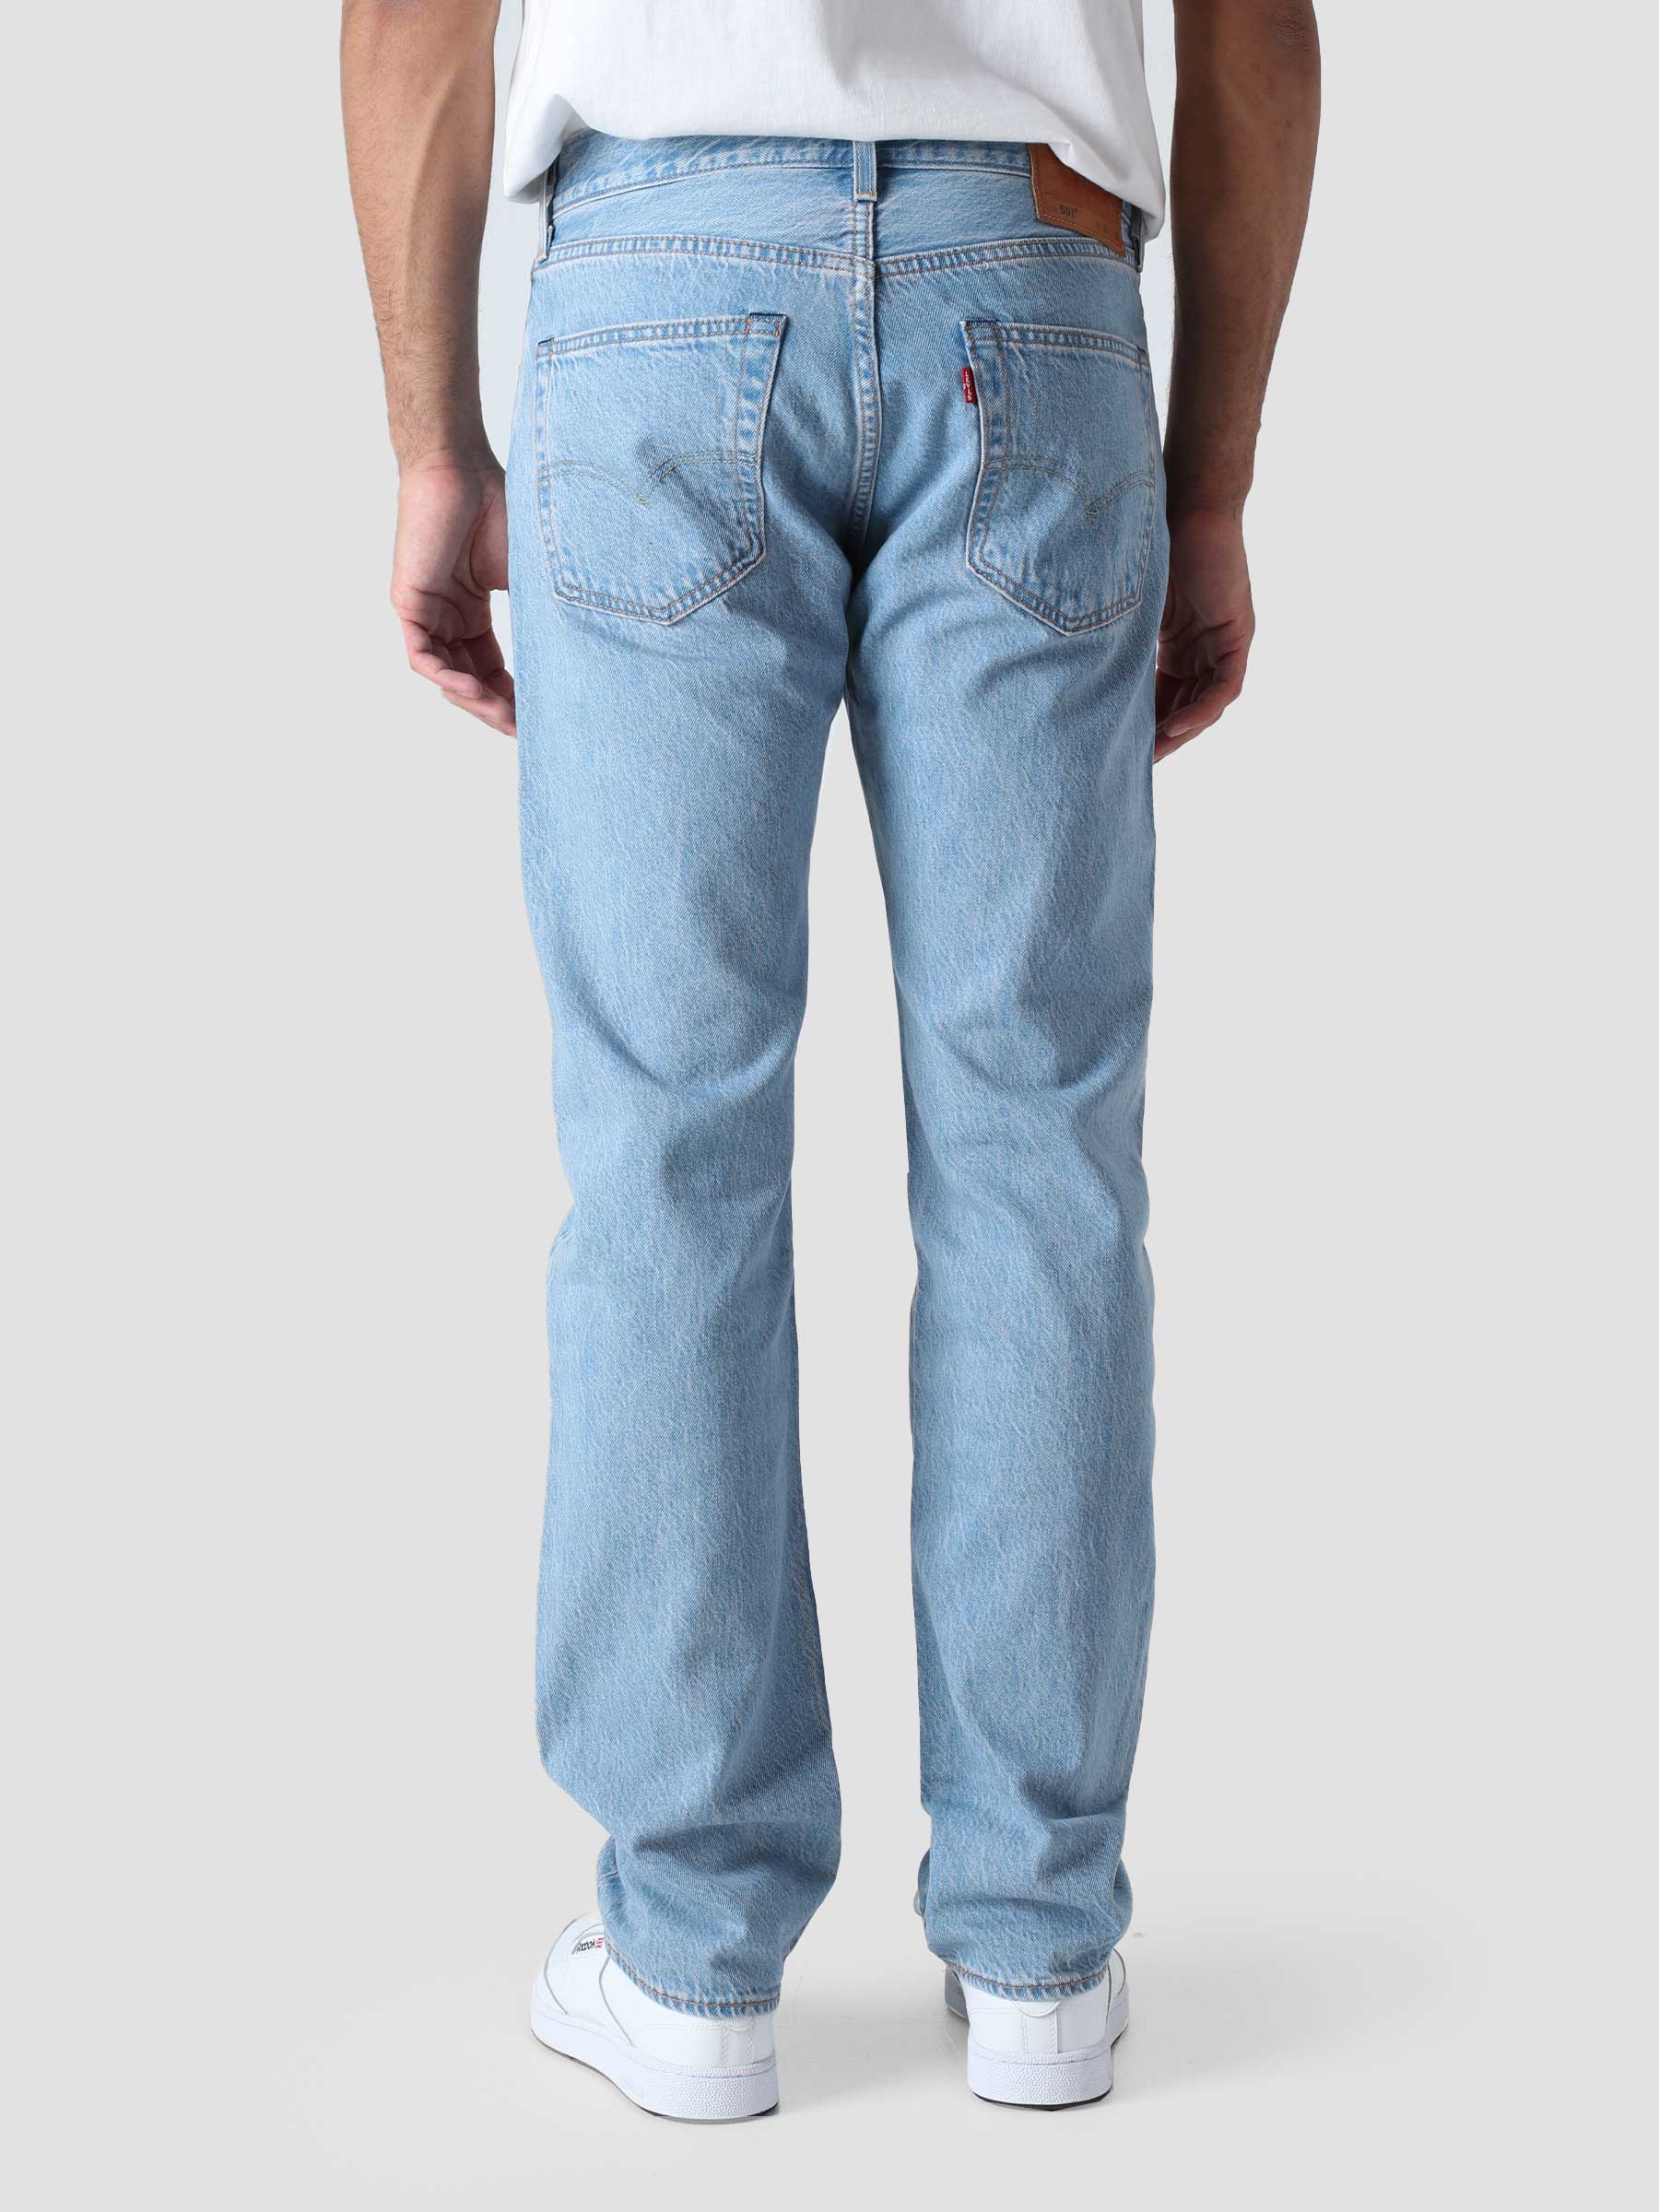 Levi's 501 jeans